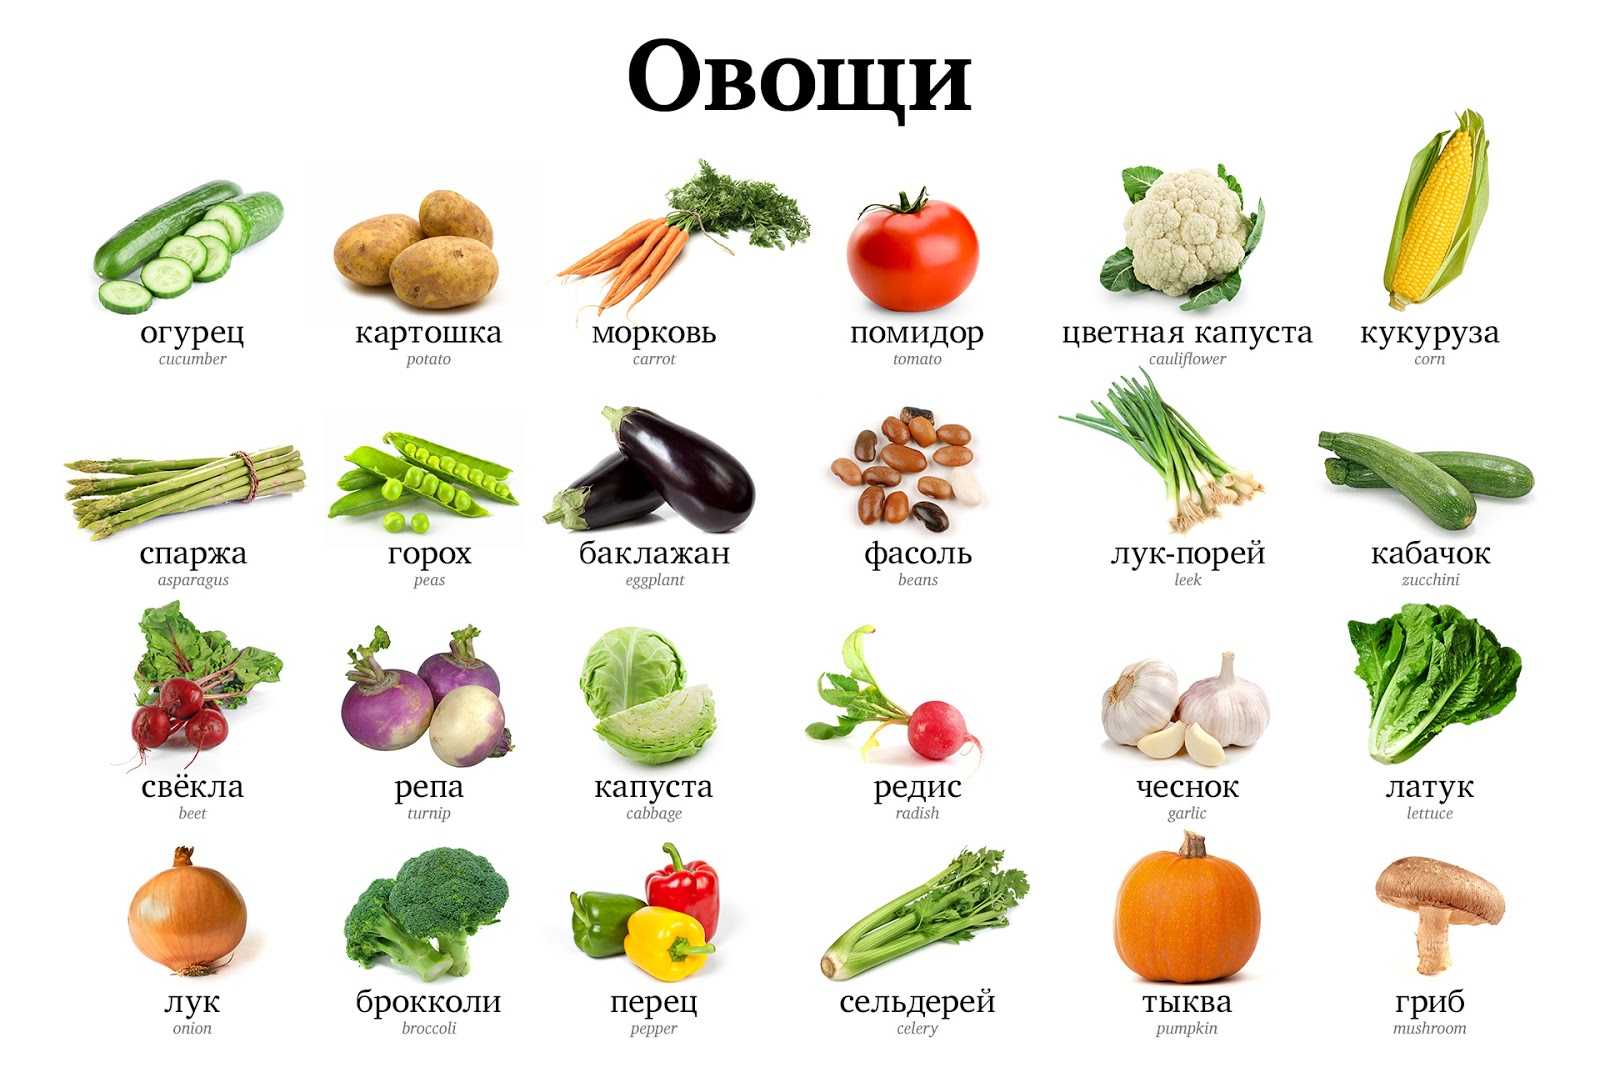 Овощи: виды и список названий с описанием полезных свойств